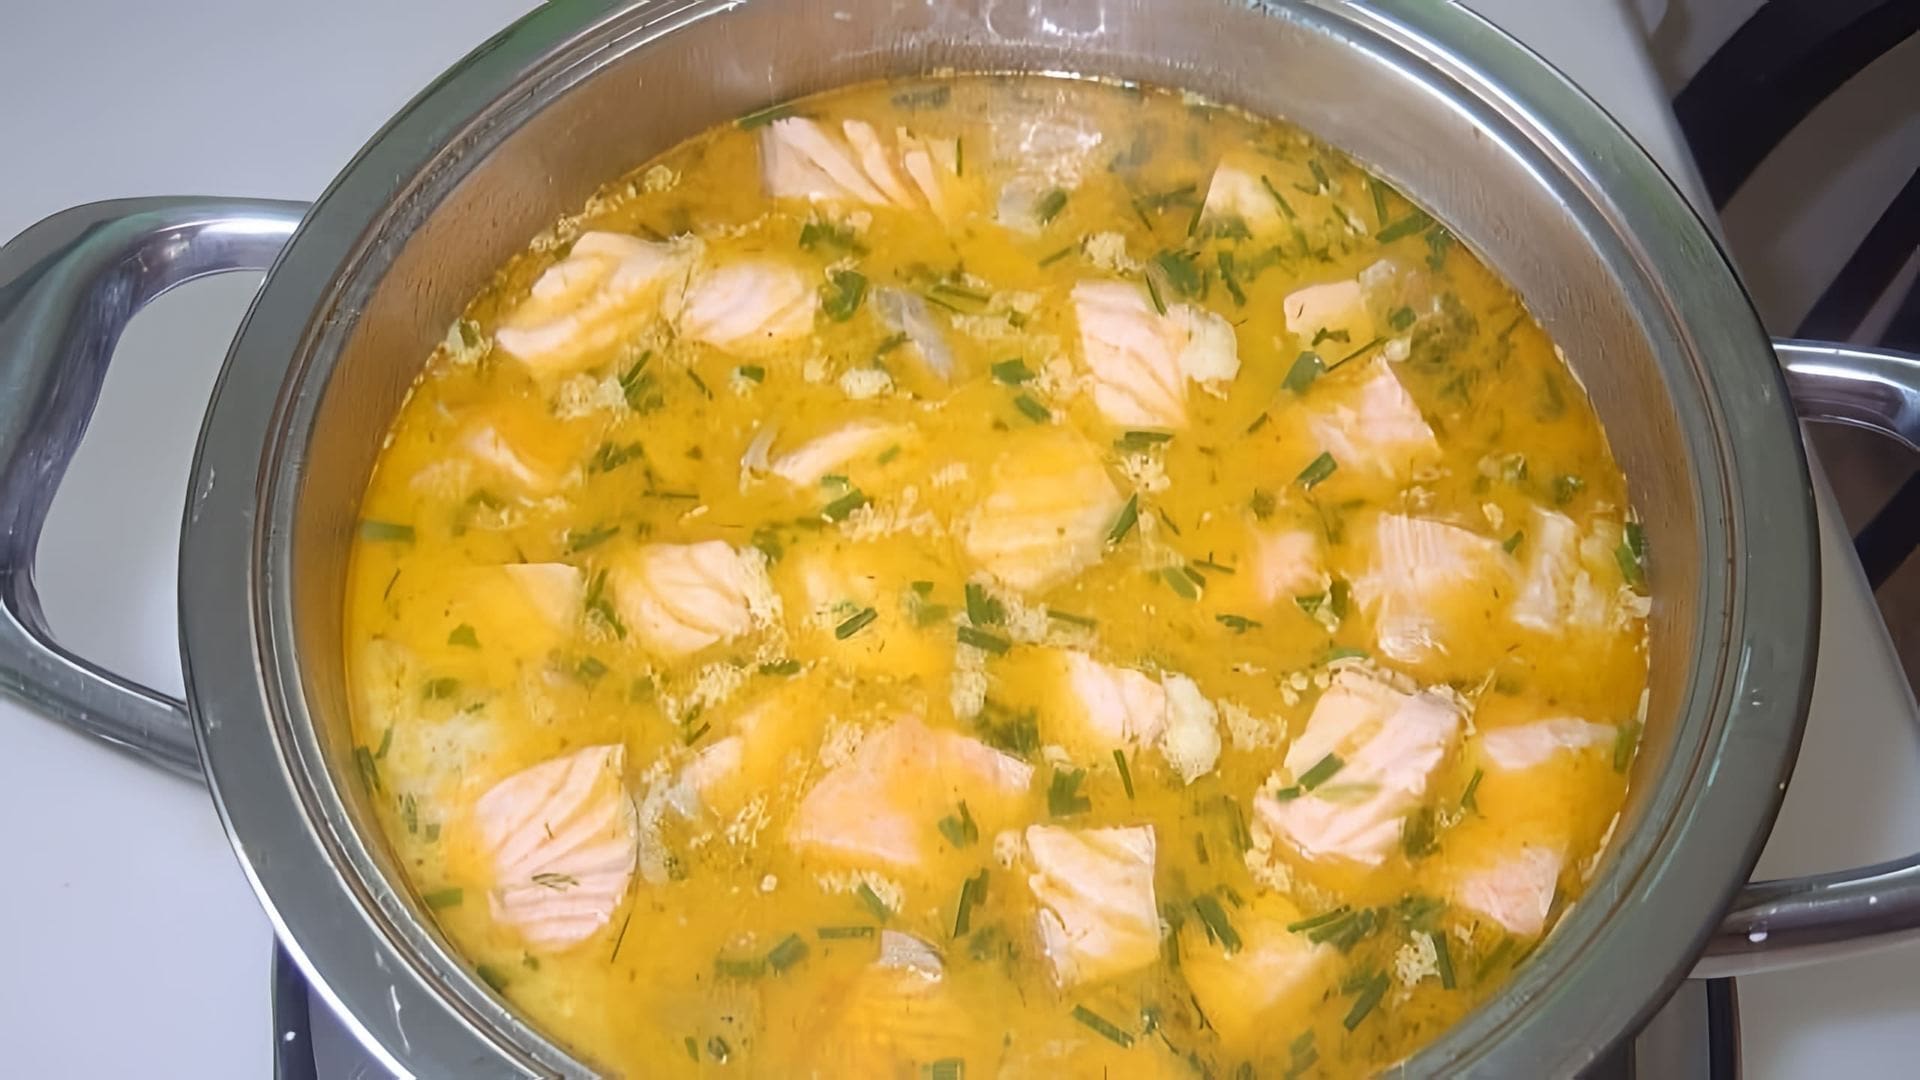 В этом видео демонстрируется процесс приготовления сырного супа с красной рыбой